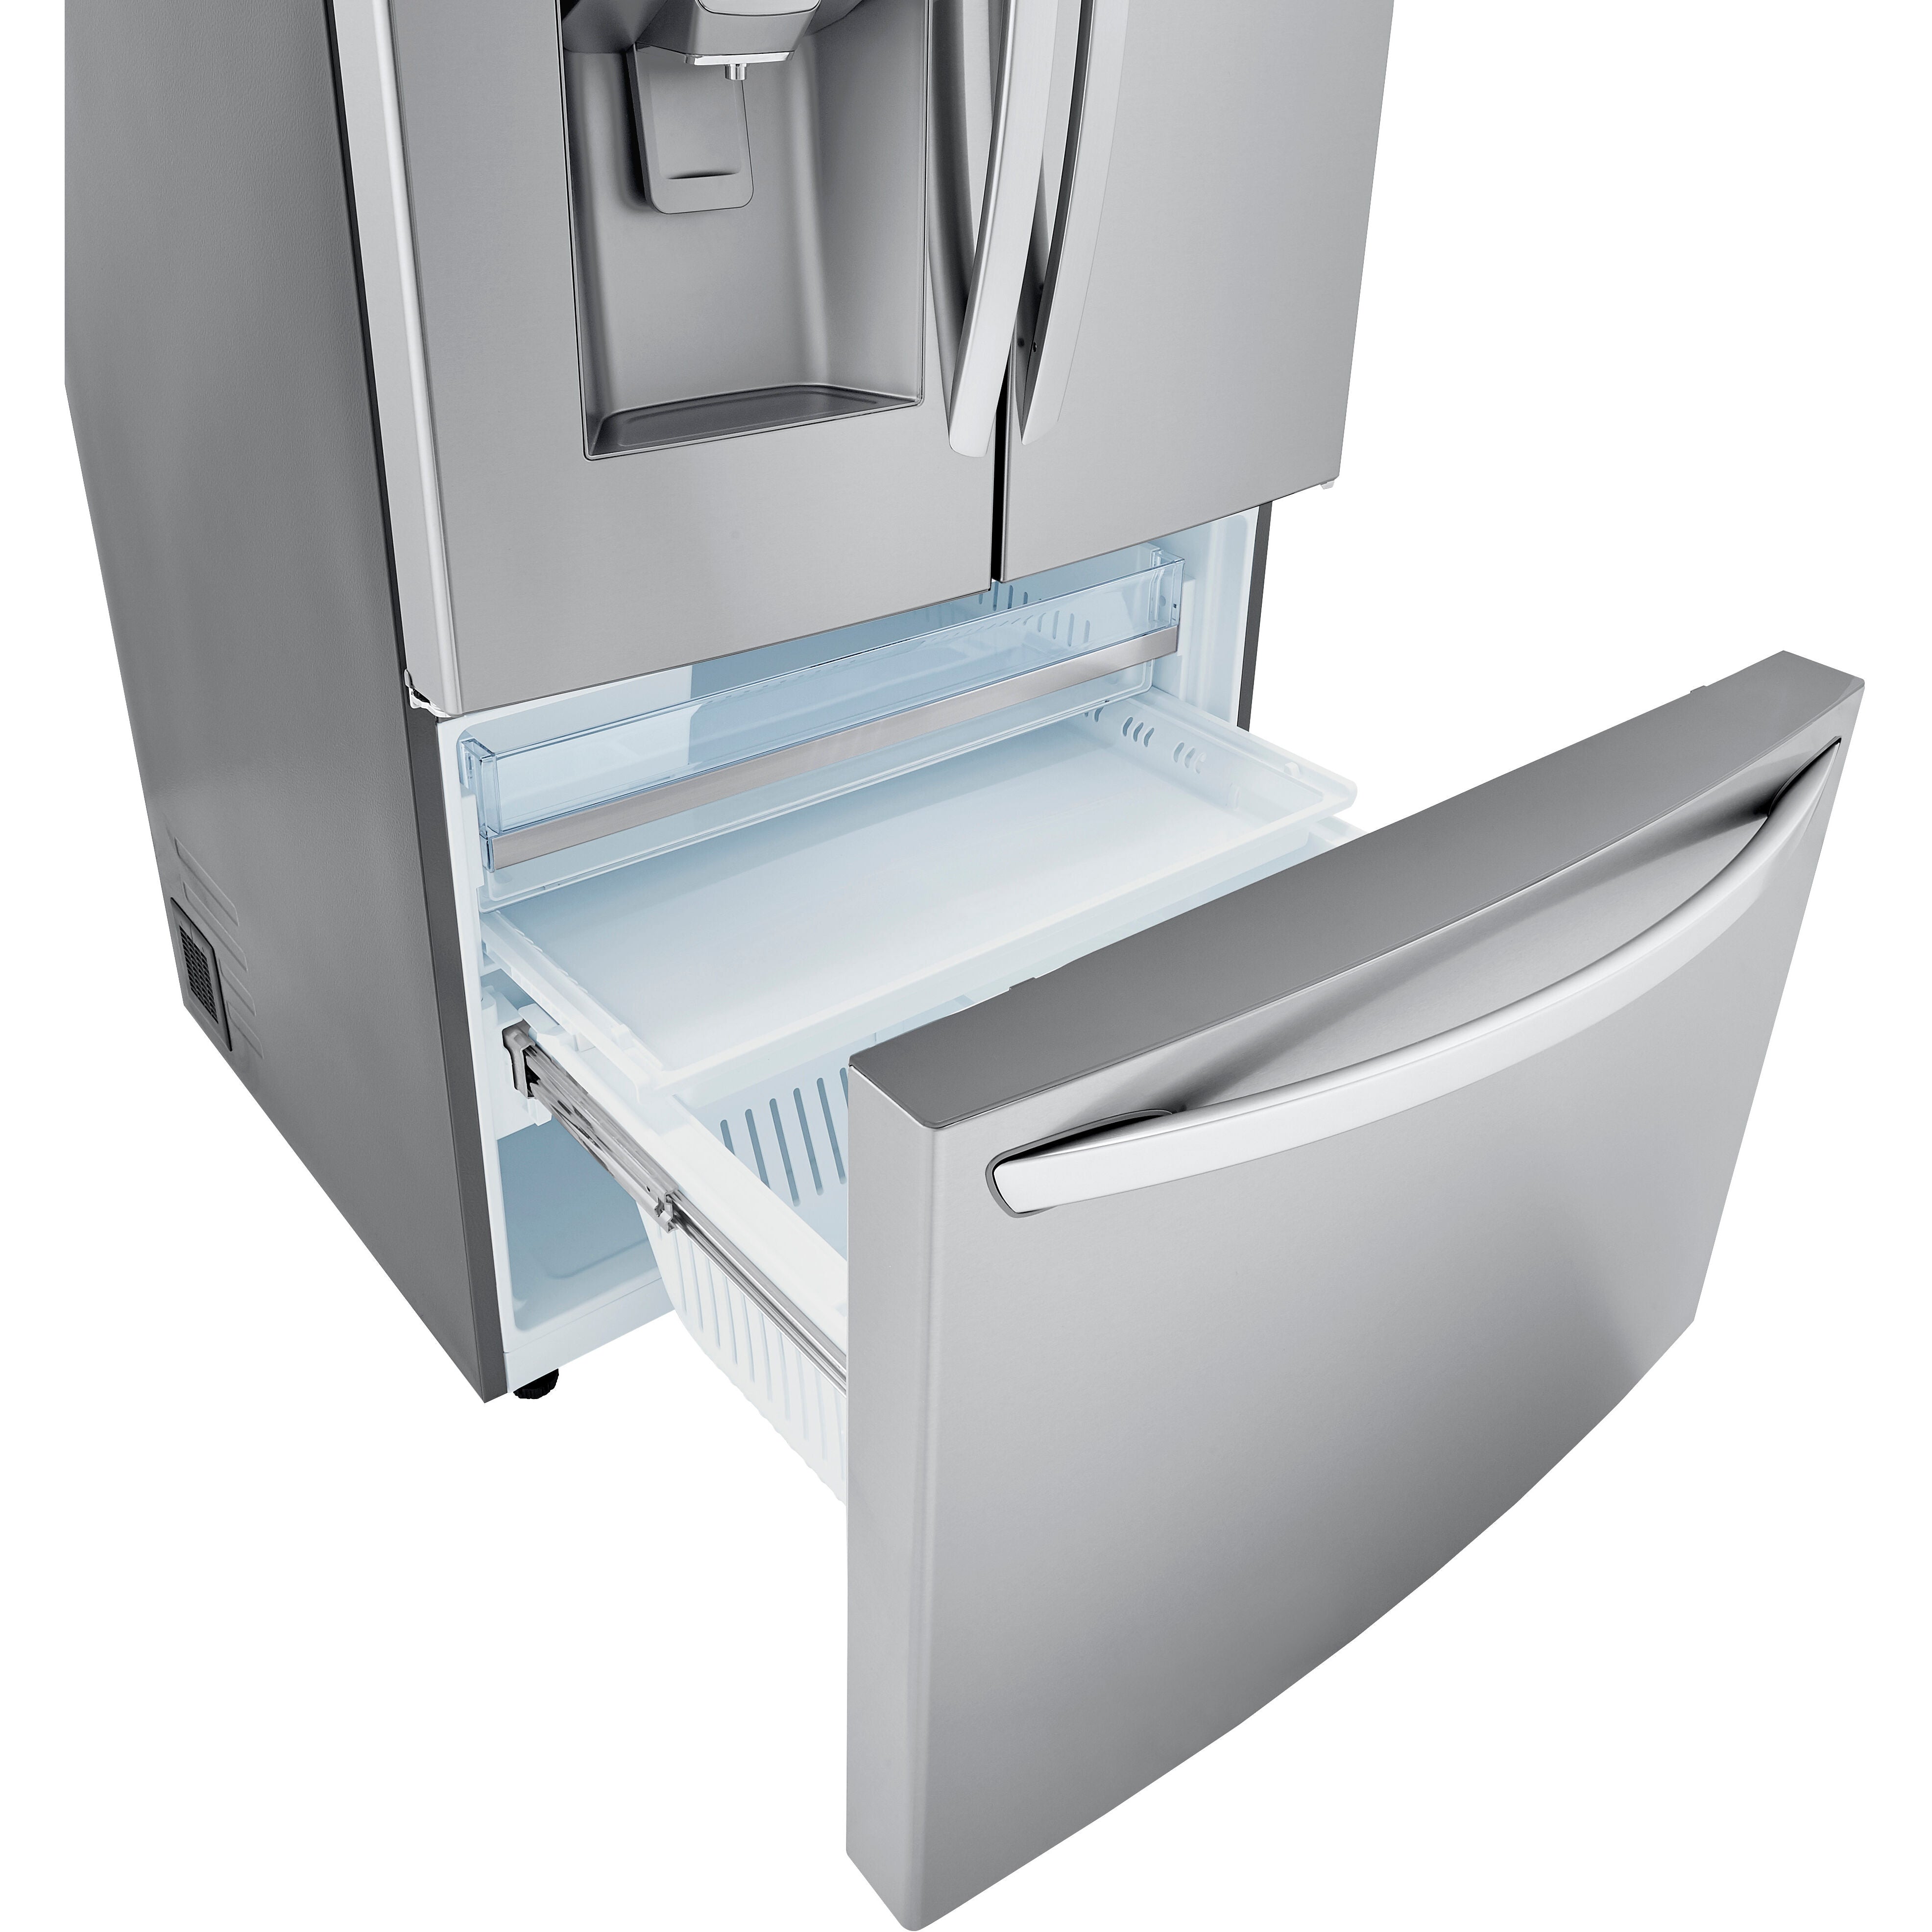 LG 36 Inch 3-Door French Door Refrigerator in Stainless Steel 24 Cu. Ft. (LRFDC2406S)